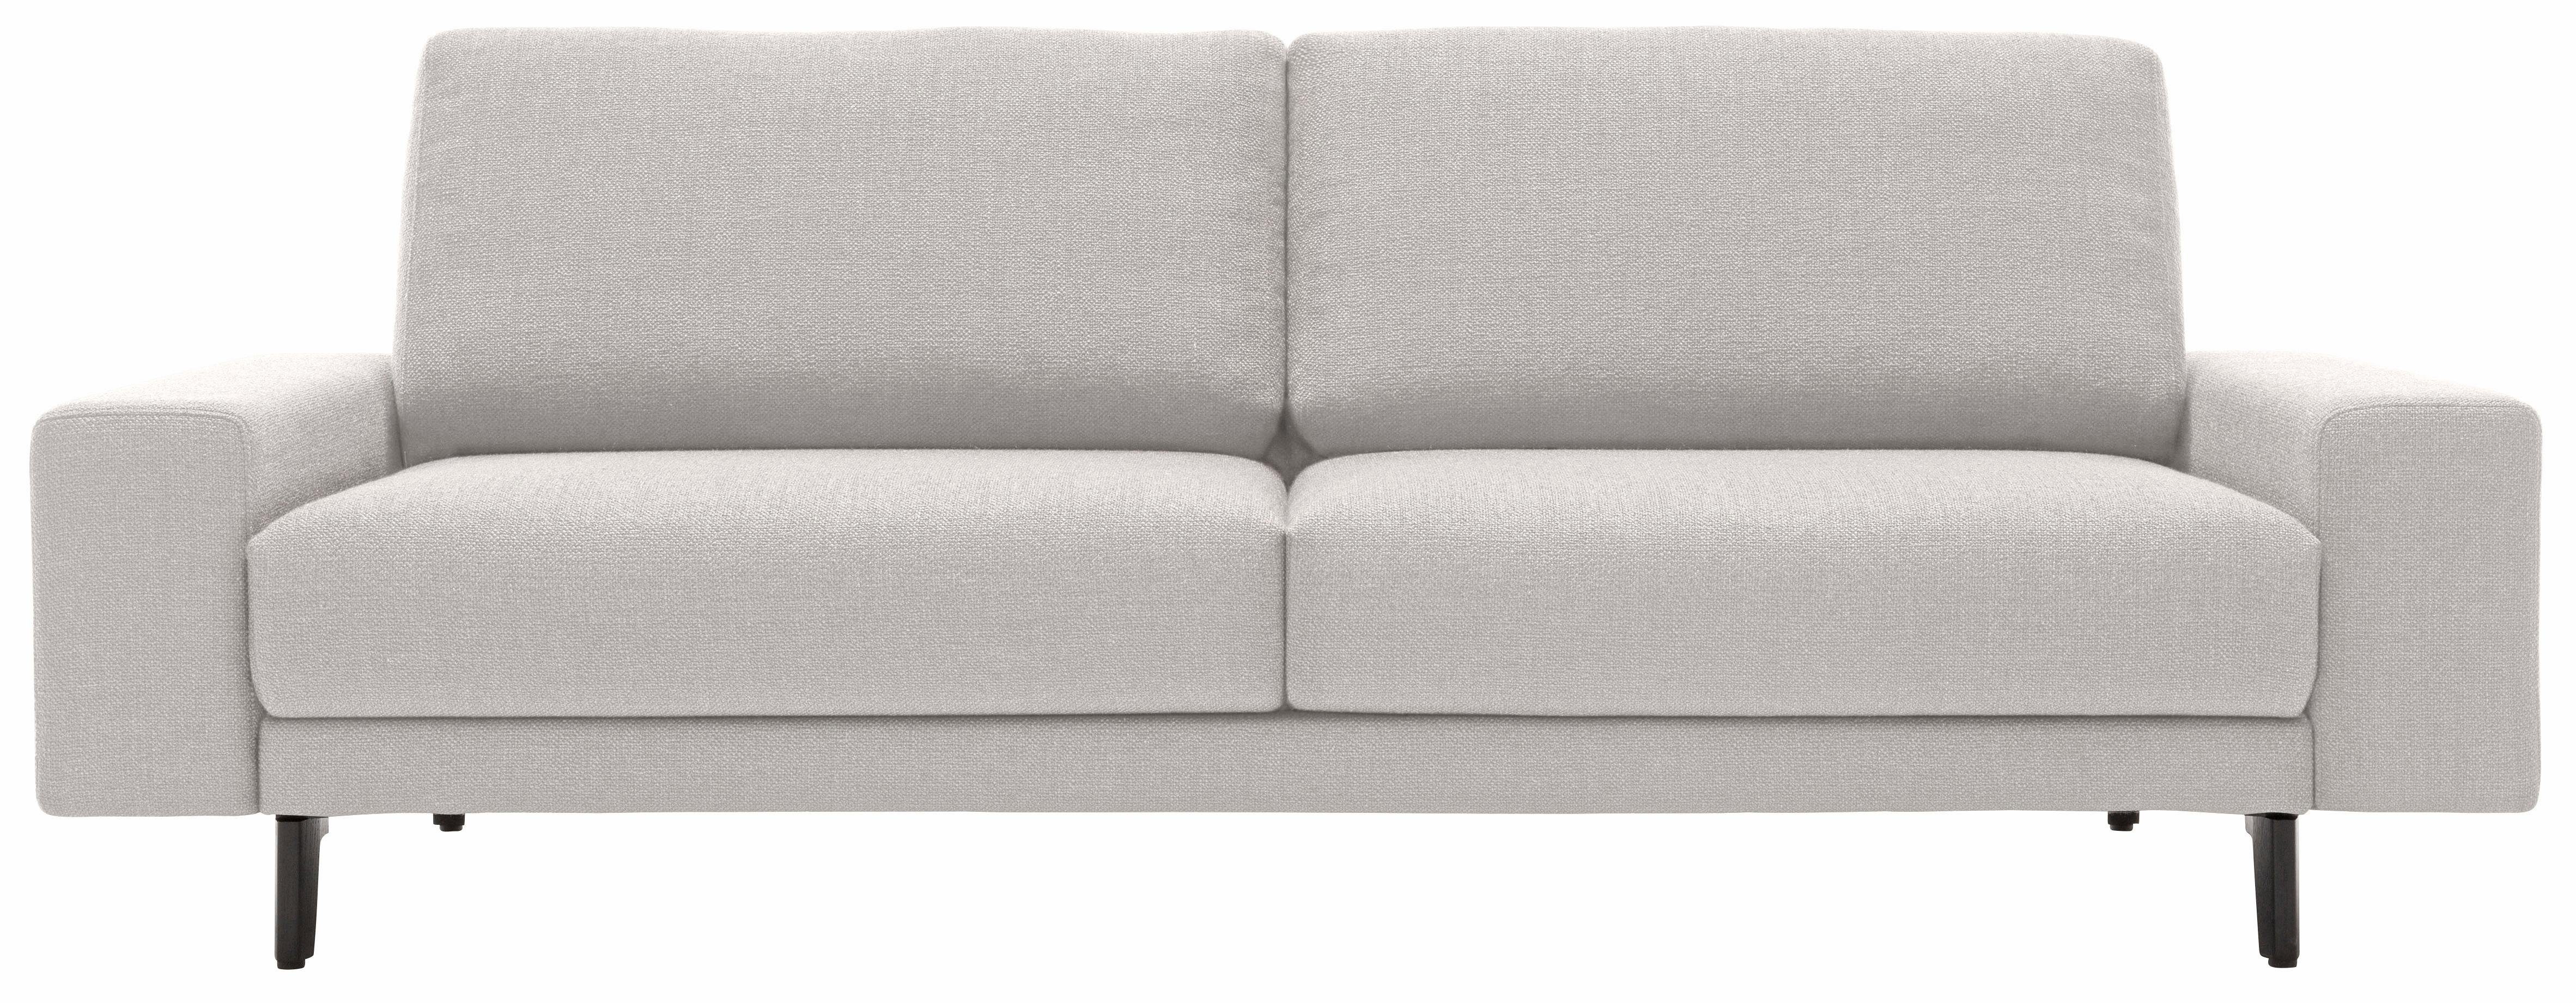 hülsta sofa 2-Sitzer hs.450, Armlehne breit niedrig, Alugussfüße in  umbragrau, Breite 180 cm | Einzelsessel